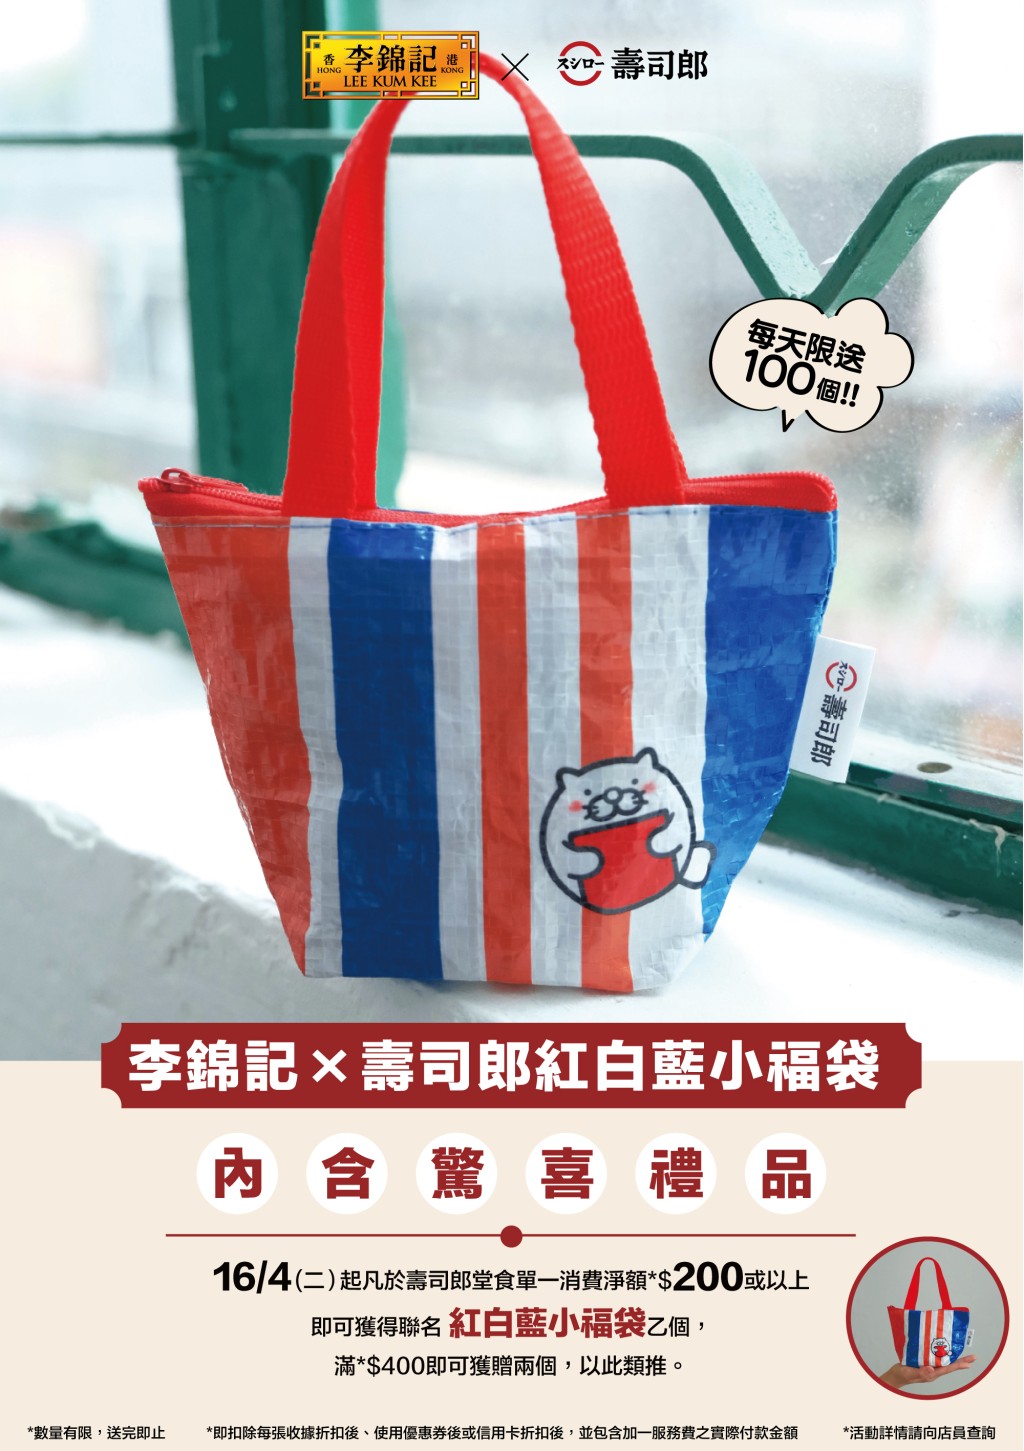 另外于4月16日起于寿司郎消费满港币$200或以上，即可获赠寿司郎x李锦记红白蓝小福袋一个，内含李锦记酱料，大家要注意数量有限，送完即止。